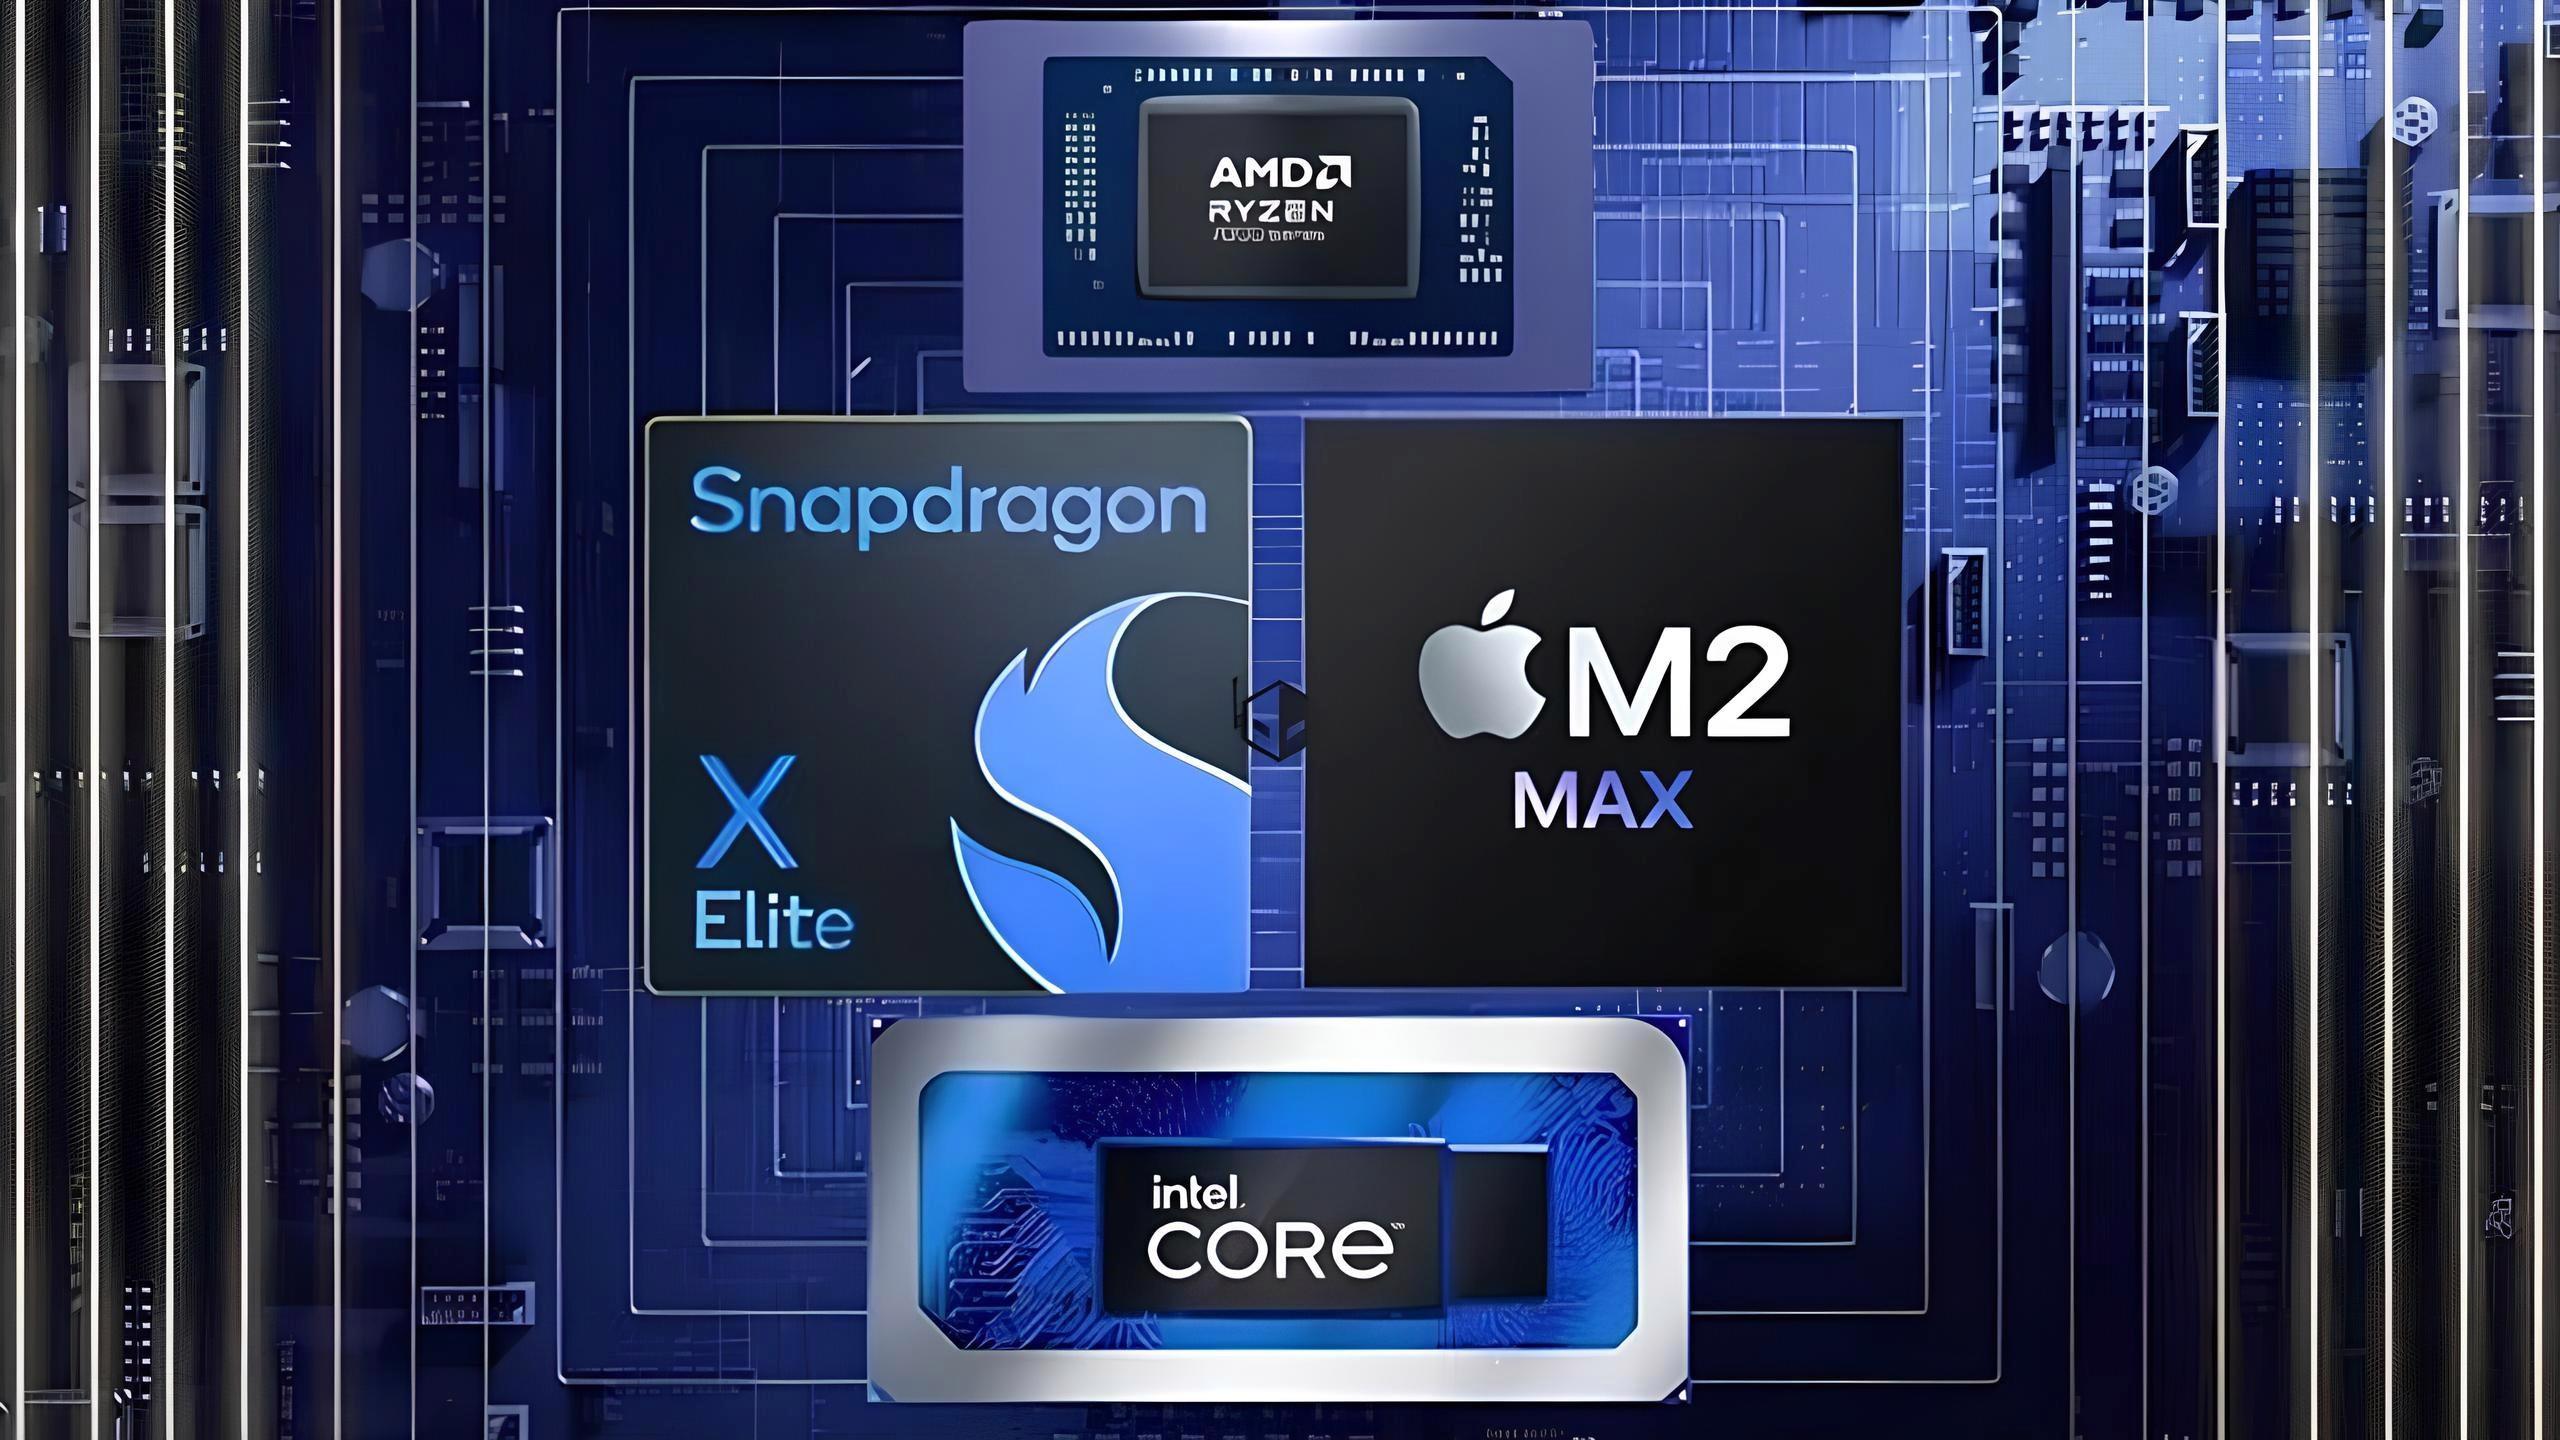 snapdragon-x-elite-icin-ilk-fiyat-bilgisi-paylasildi-cep-yakacak-O45pxAUr.jpg